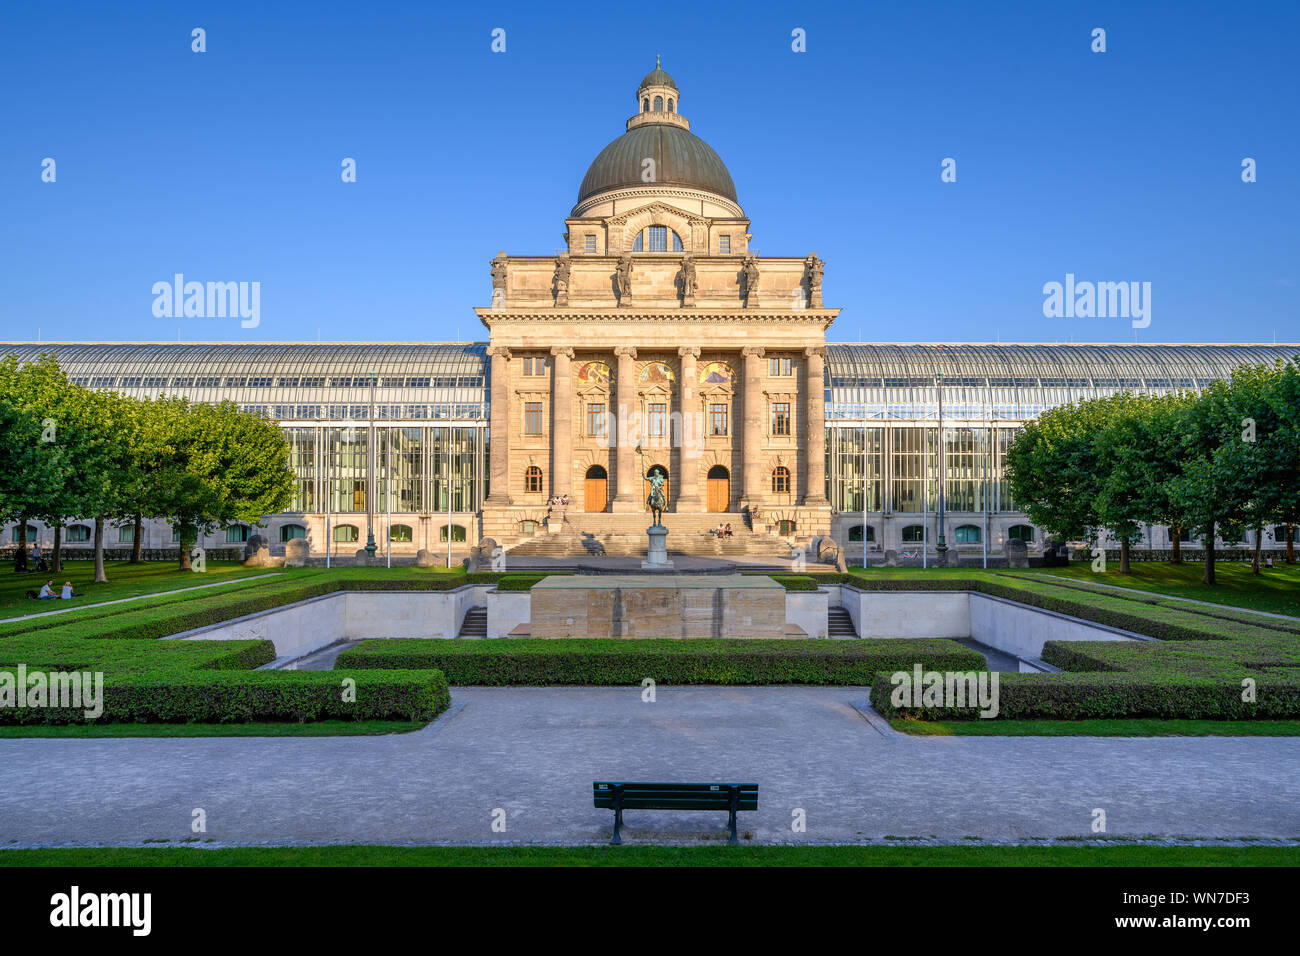 Das Gebäude der Bayerischen Staatskanzlei ist die offizielle Residenz des Ministerpräsidenten von Bayern, und wurde in 1993 abgeschlossen. Stockfoto